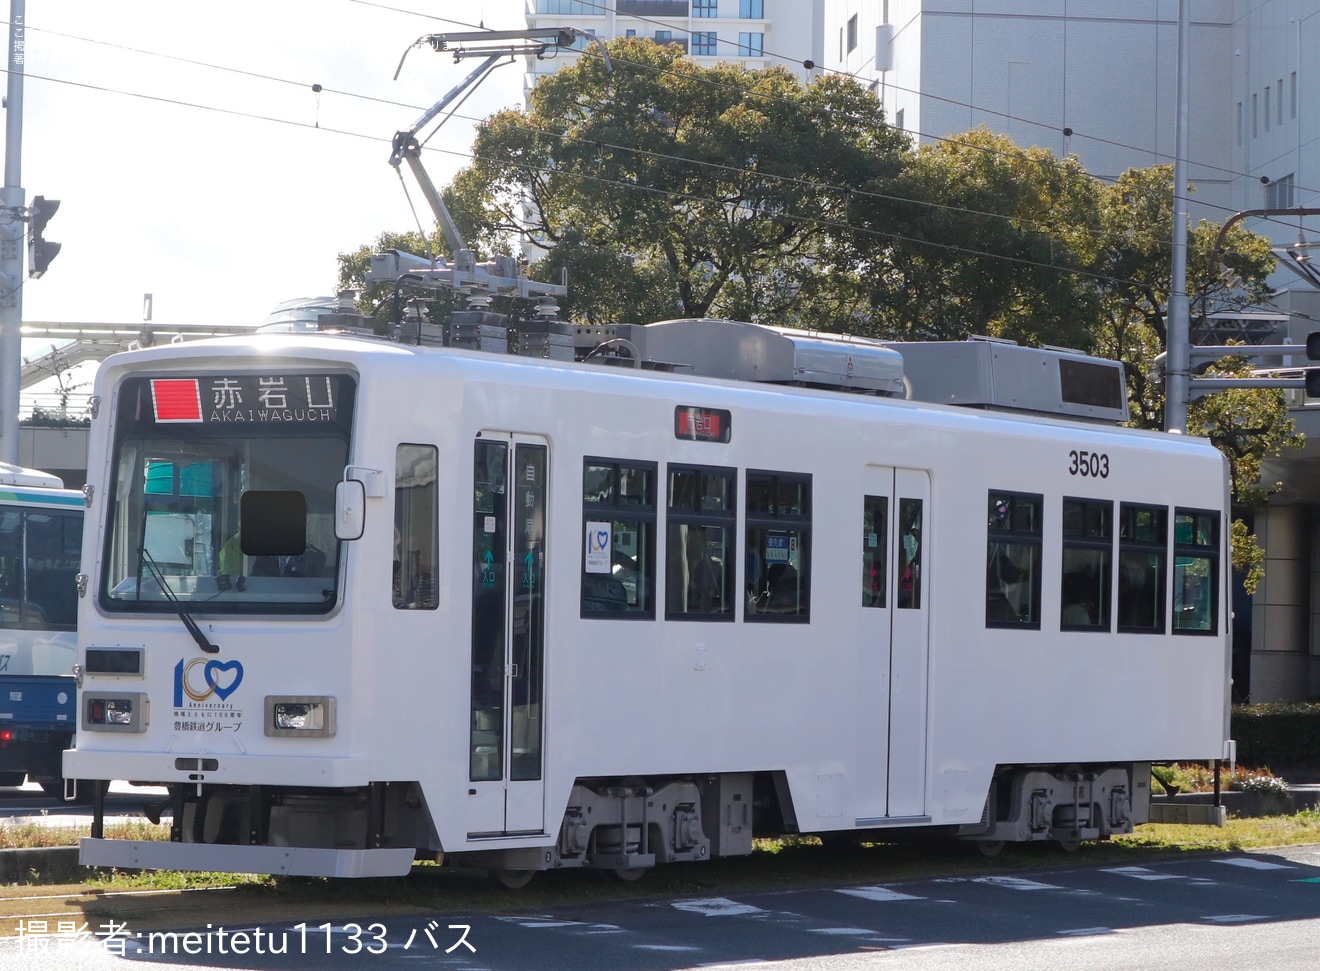 【豊鉄】創立100周年ロゴ掲出した「白い電車」がモ3503を使用し運転の拡大写真